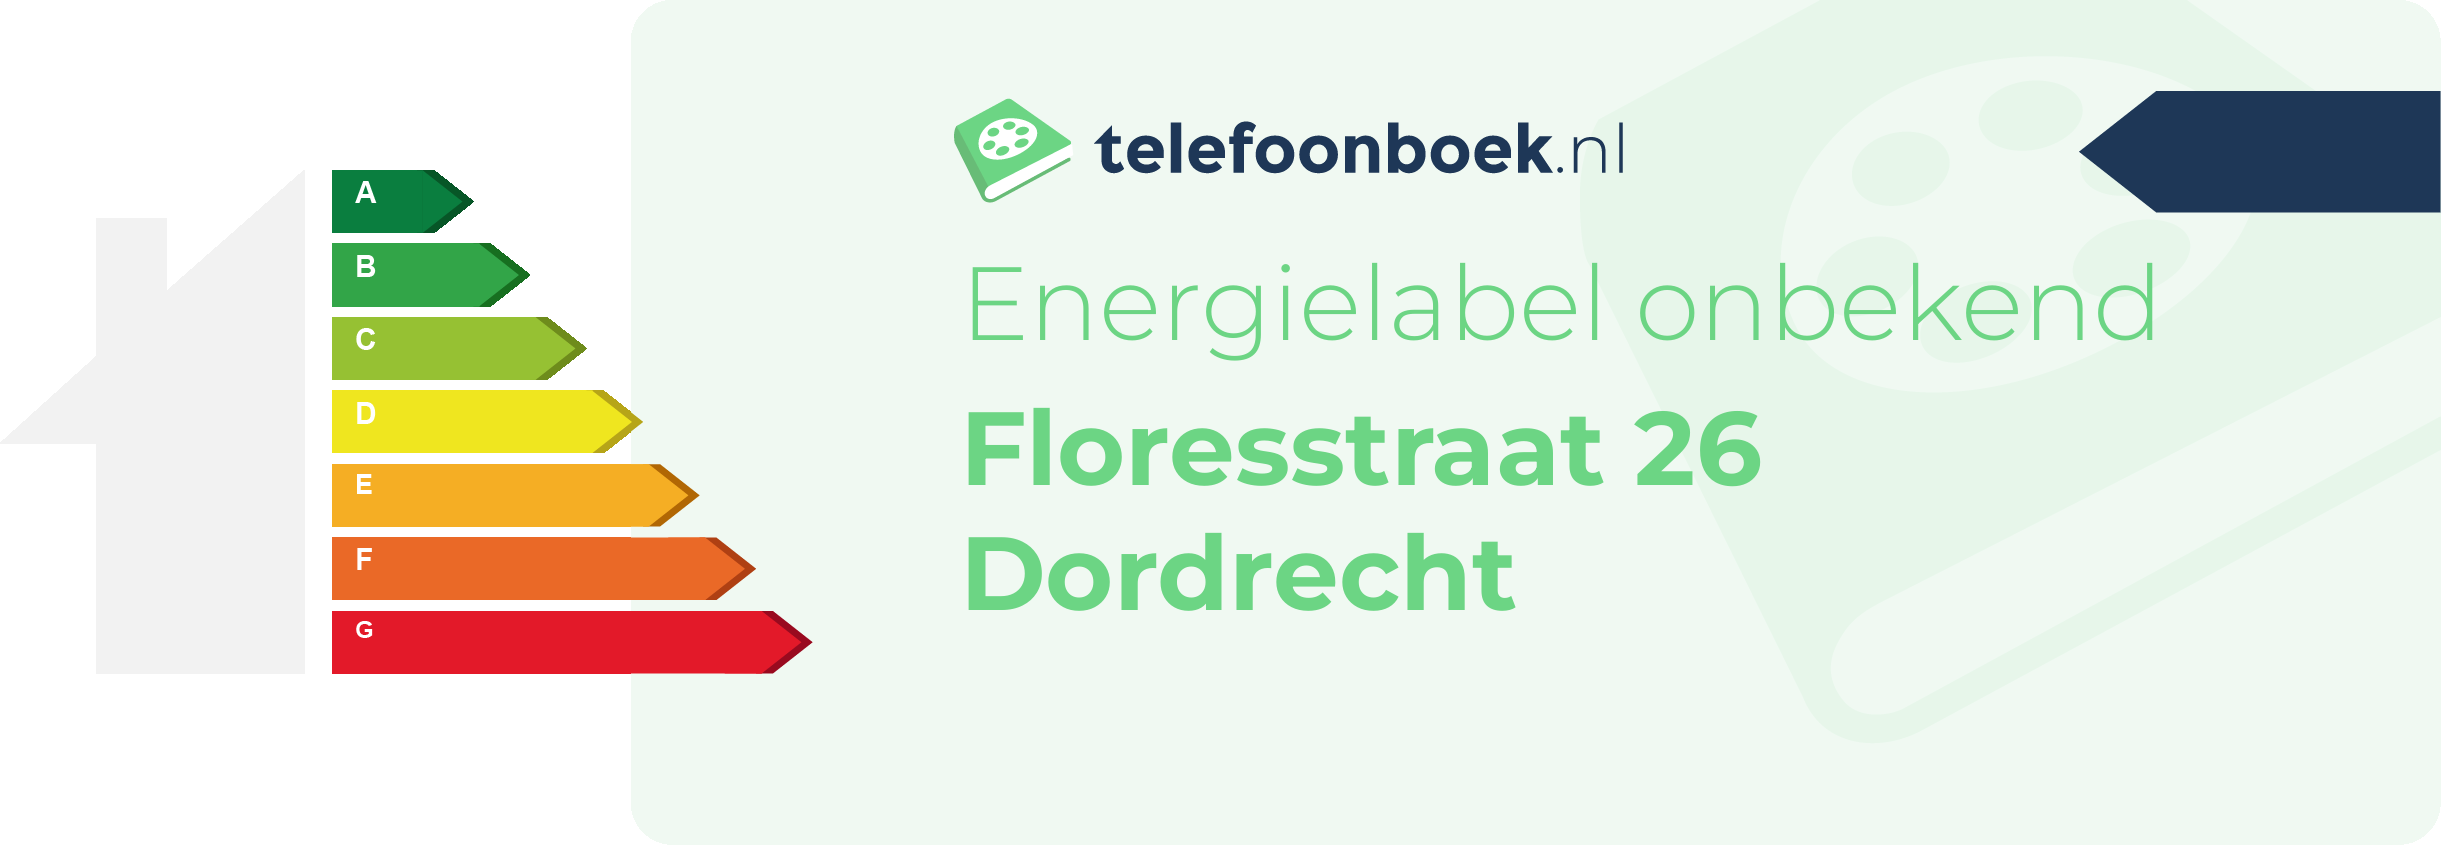 Energielabel Floresstraat 26 Dordrecht